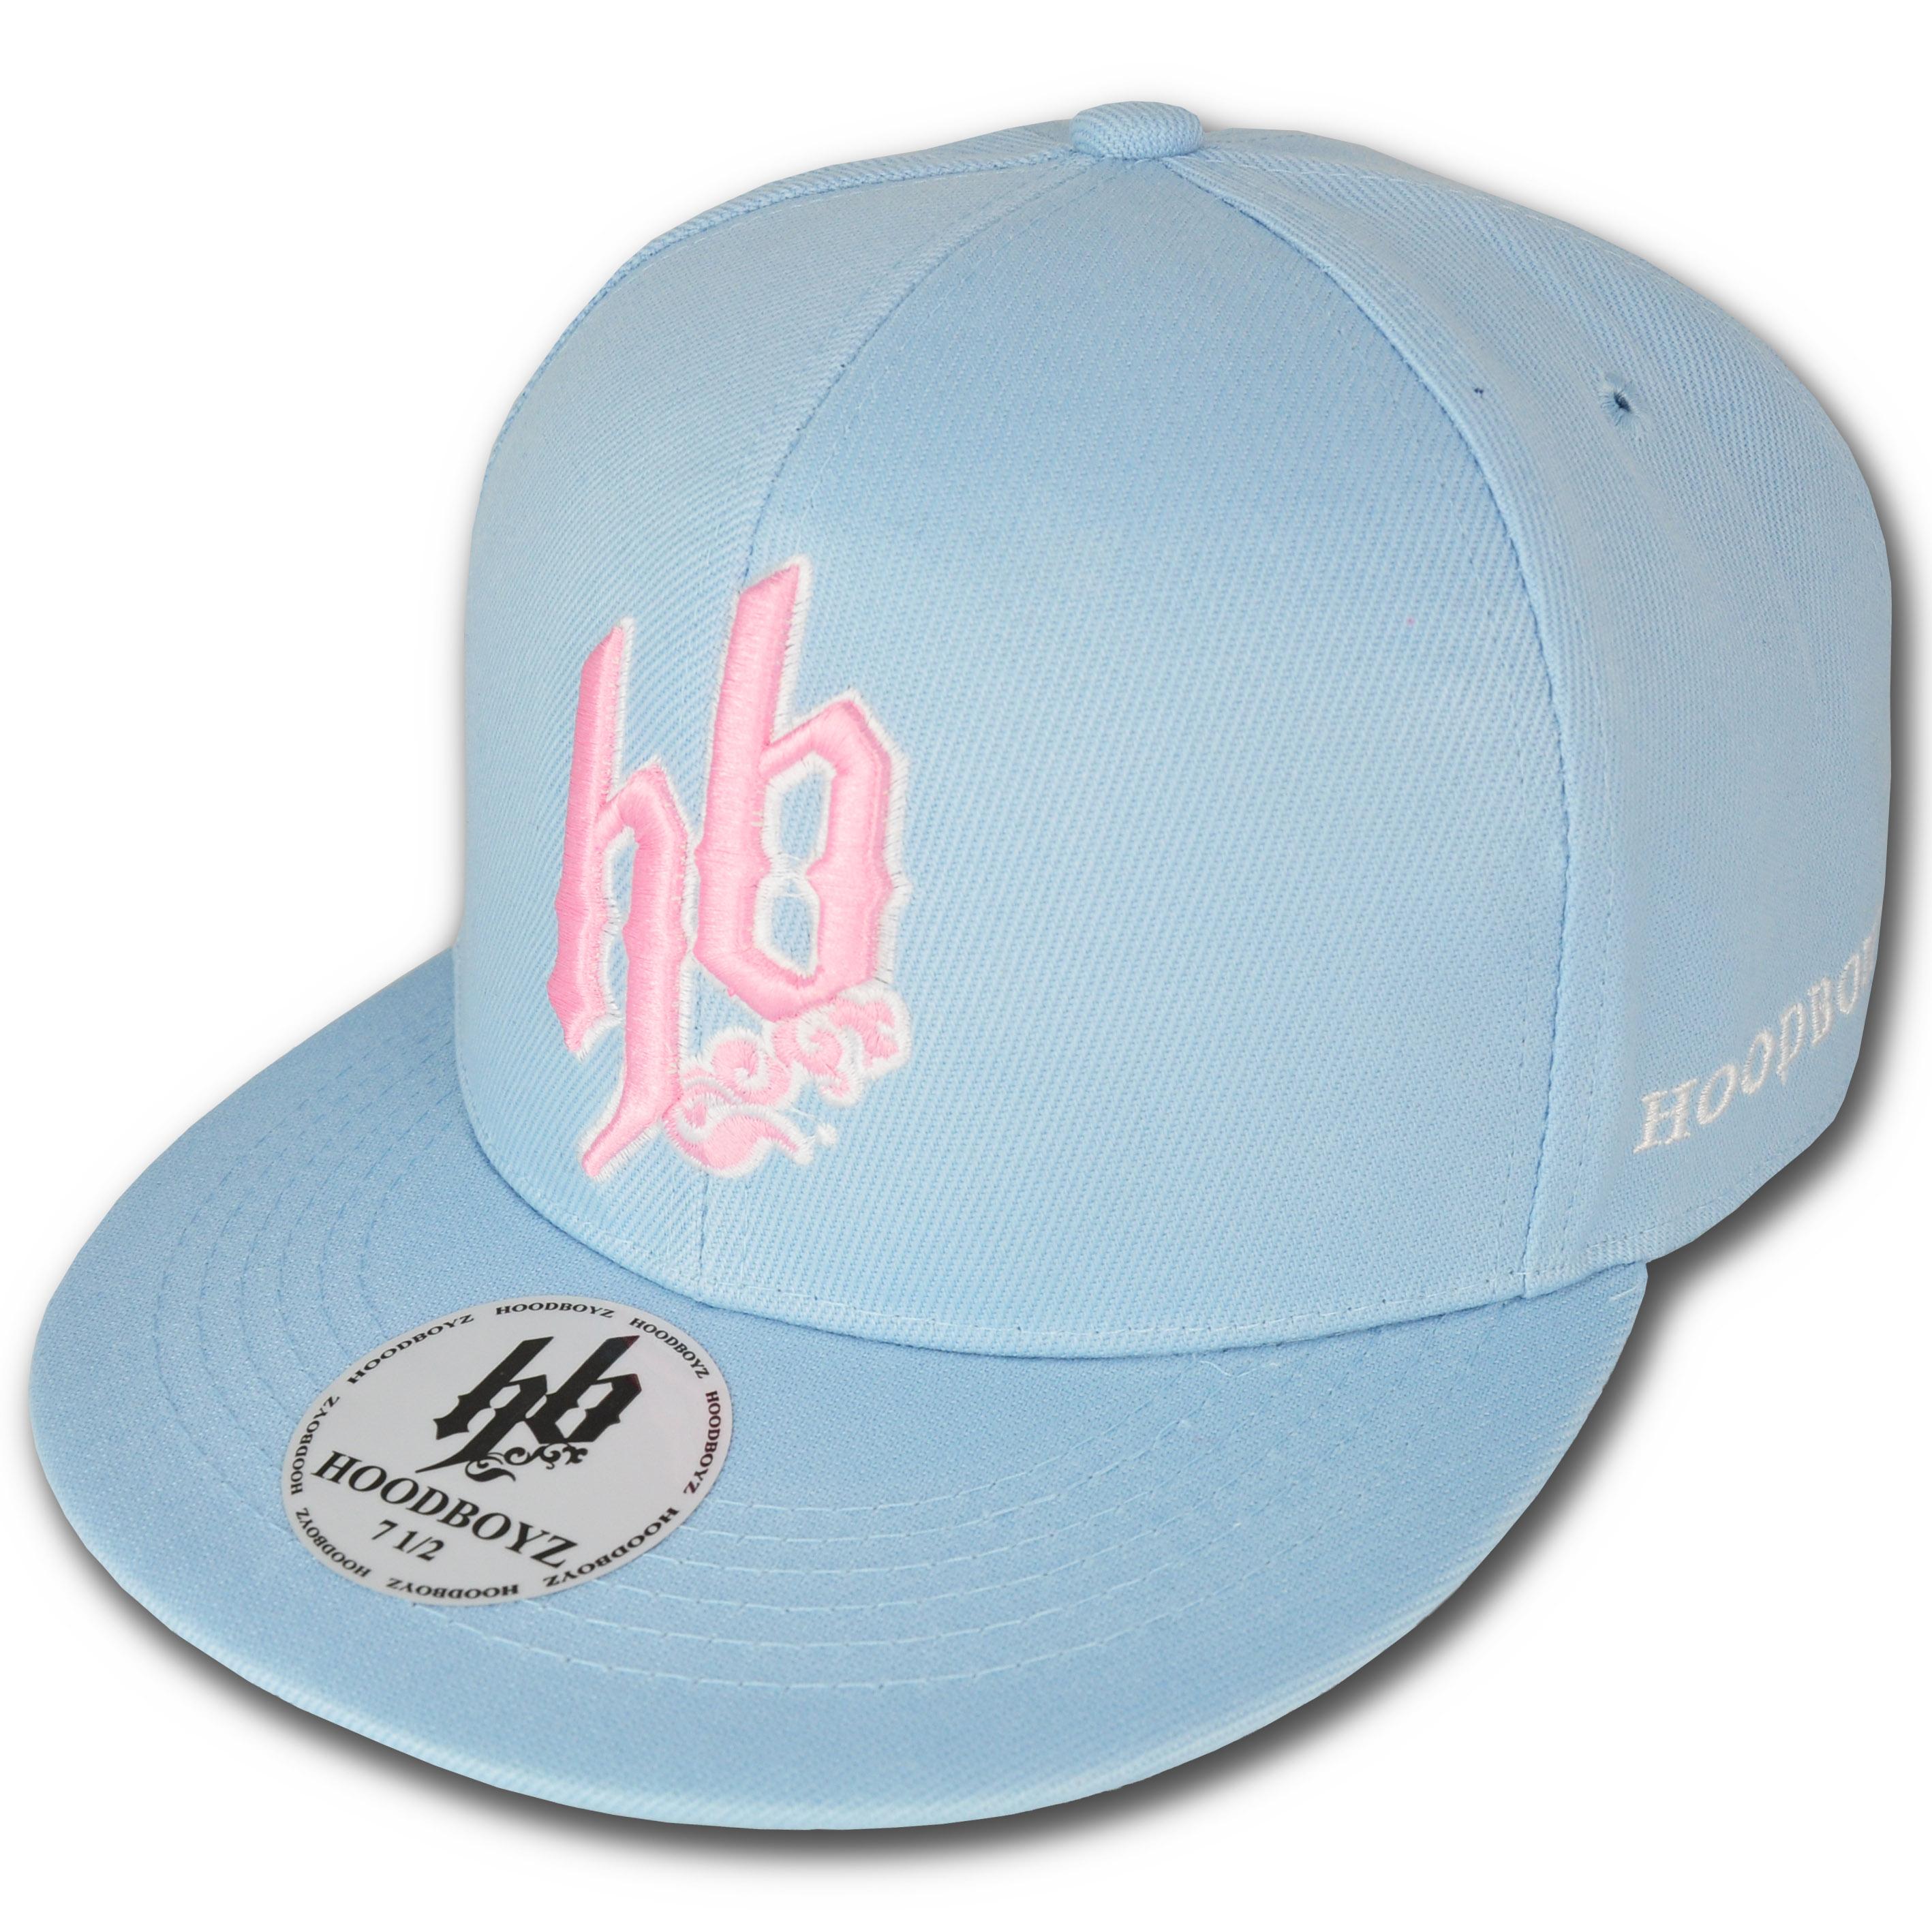 Foto Hoodboyz Basic Hb Logo Gorras Empotrados Azul Claro